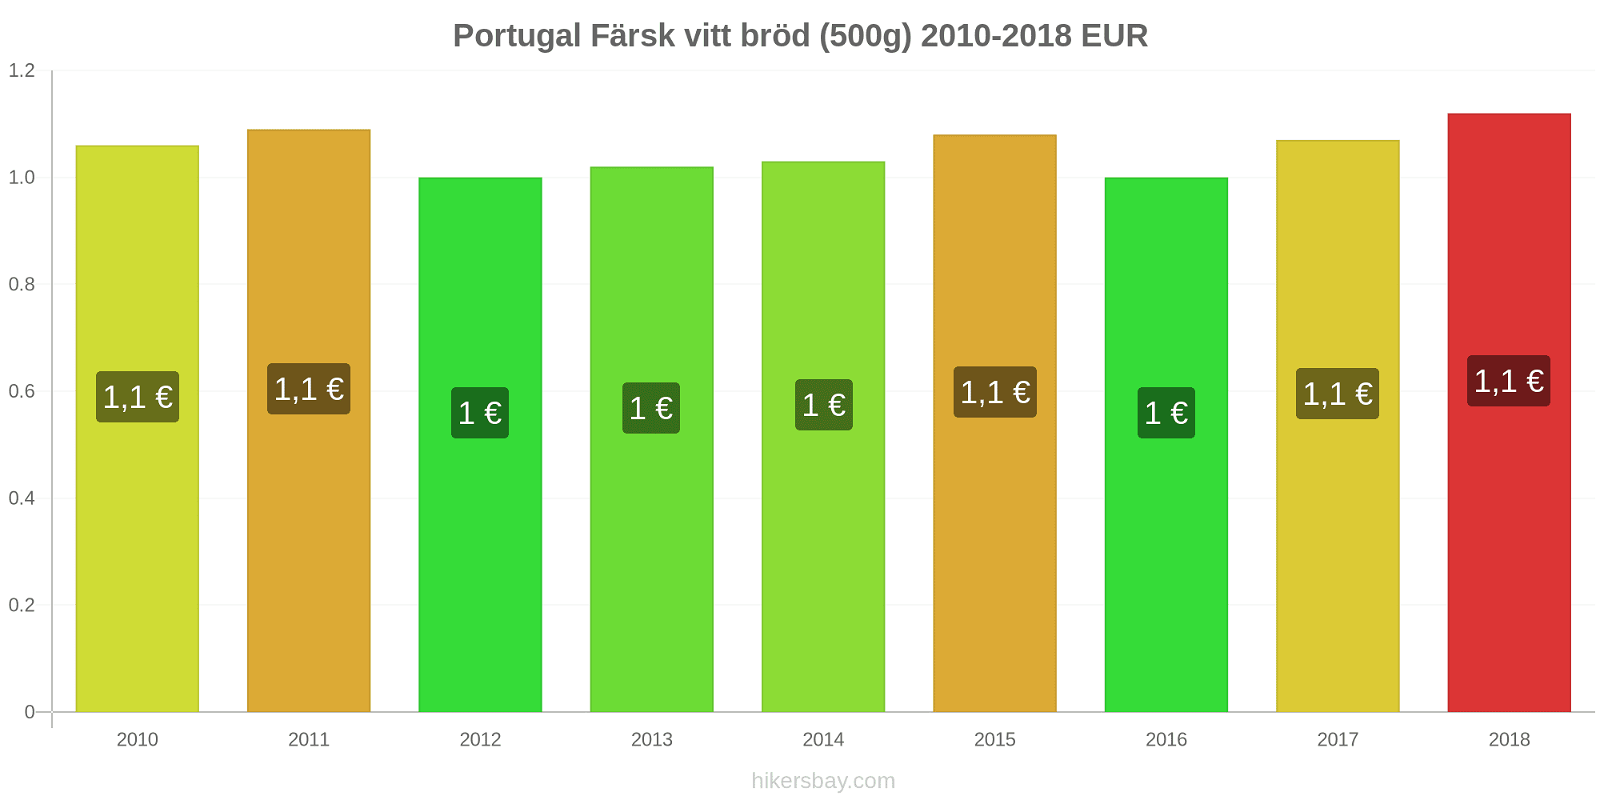 Portugal prisändringar Färsk vitt bröd (500g) hikersbay.com